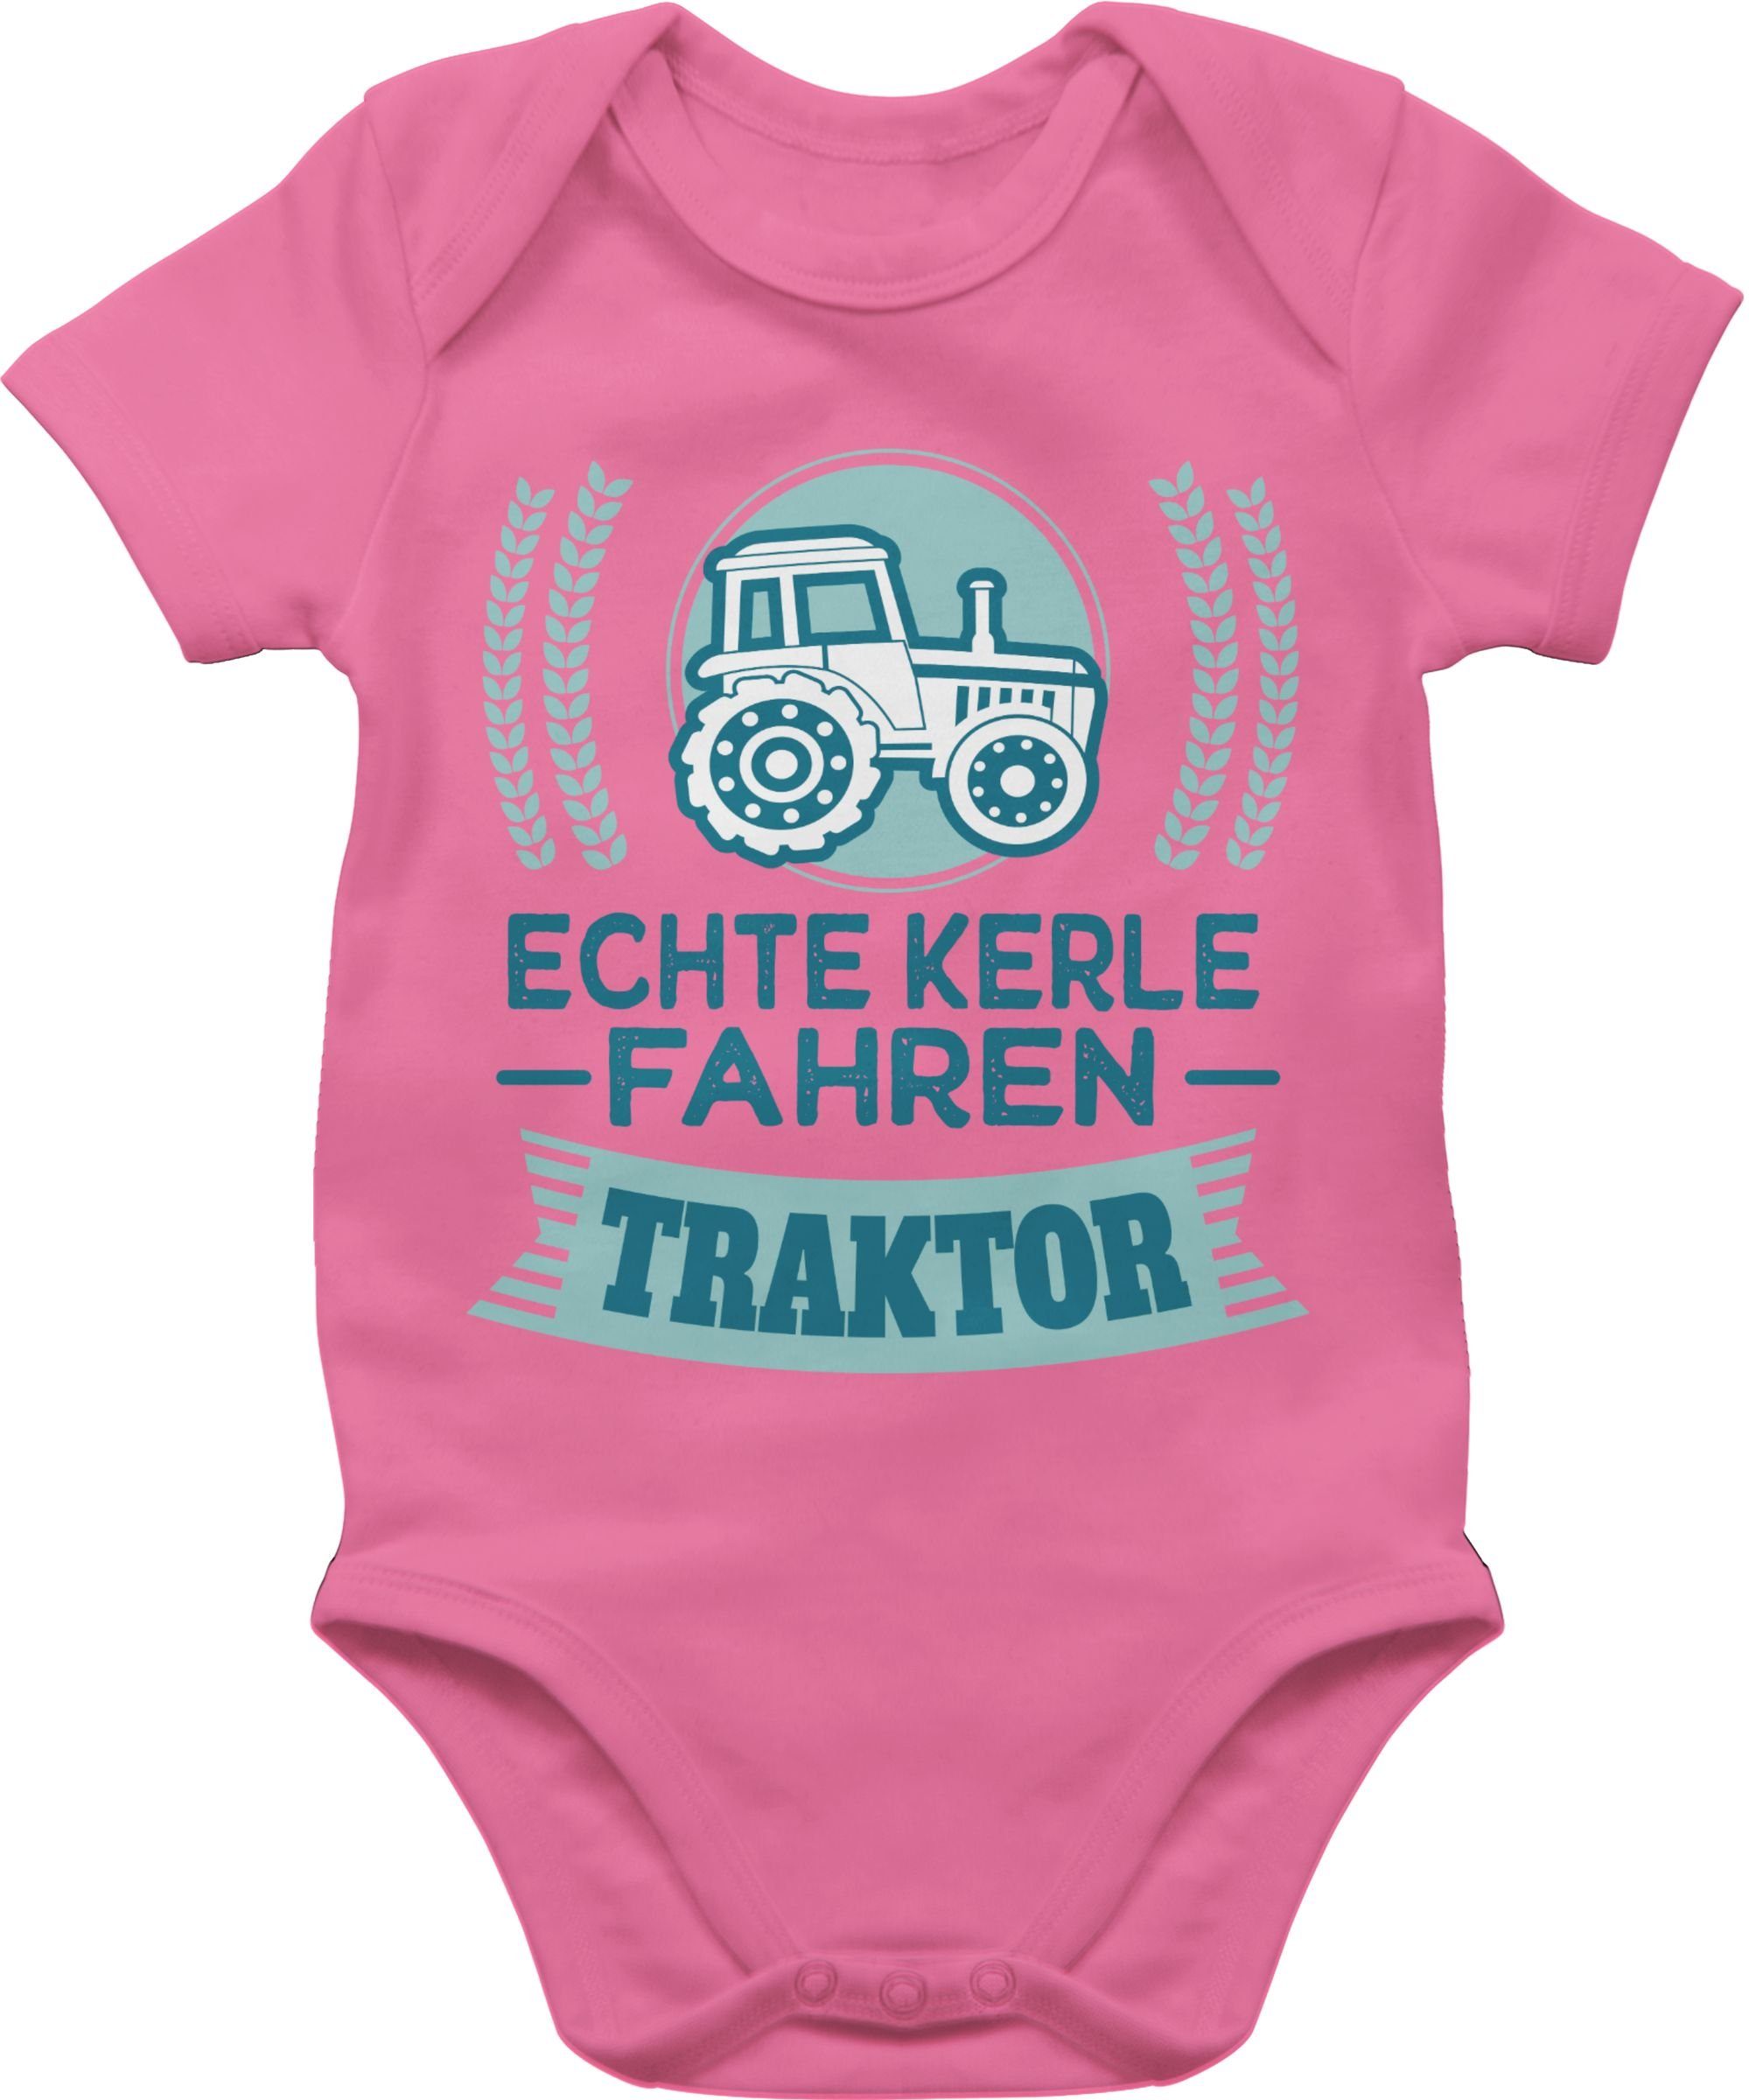 Traktor - Shirtracer fahren Kerle 3 Landwirte für Geschenk Traktor Pink Shirtbody Bauern Echte